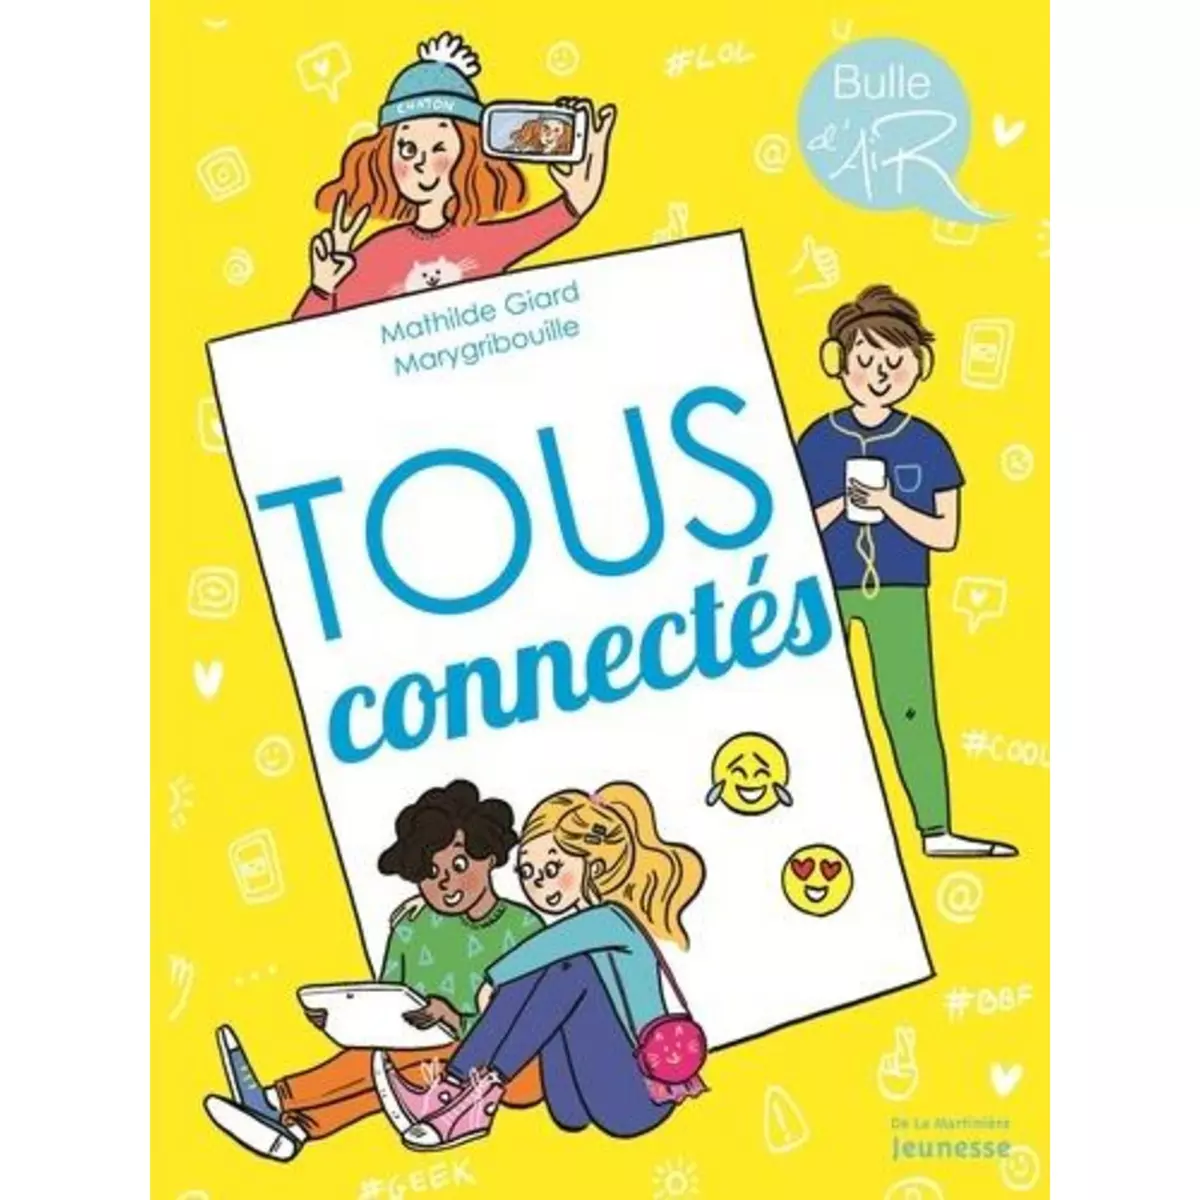  TOUS CONNECTES, Giard Mathilde